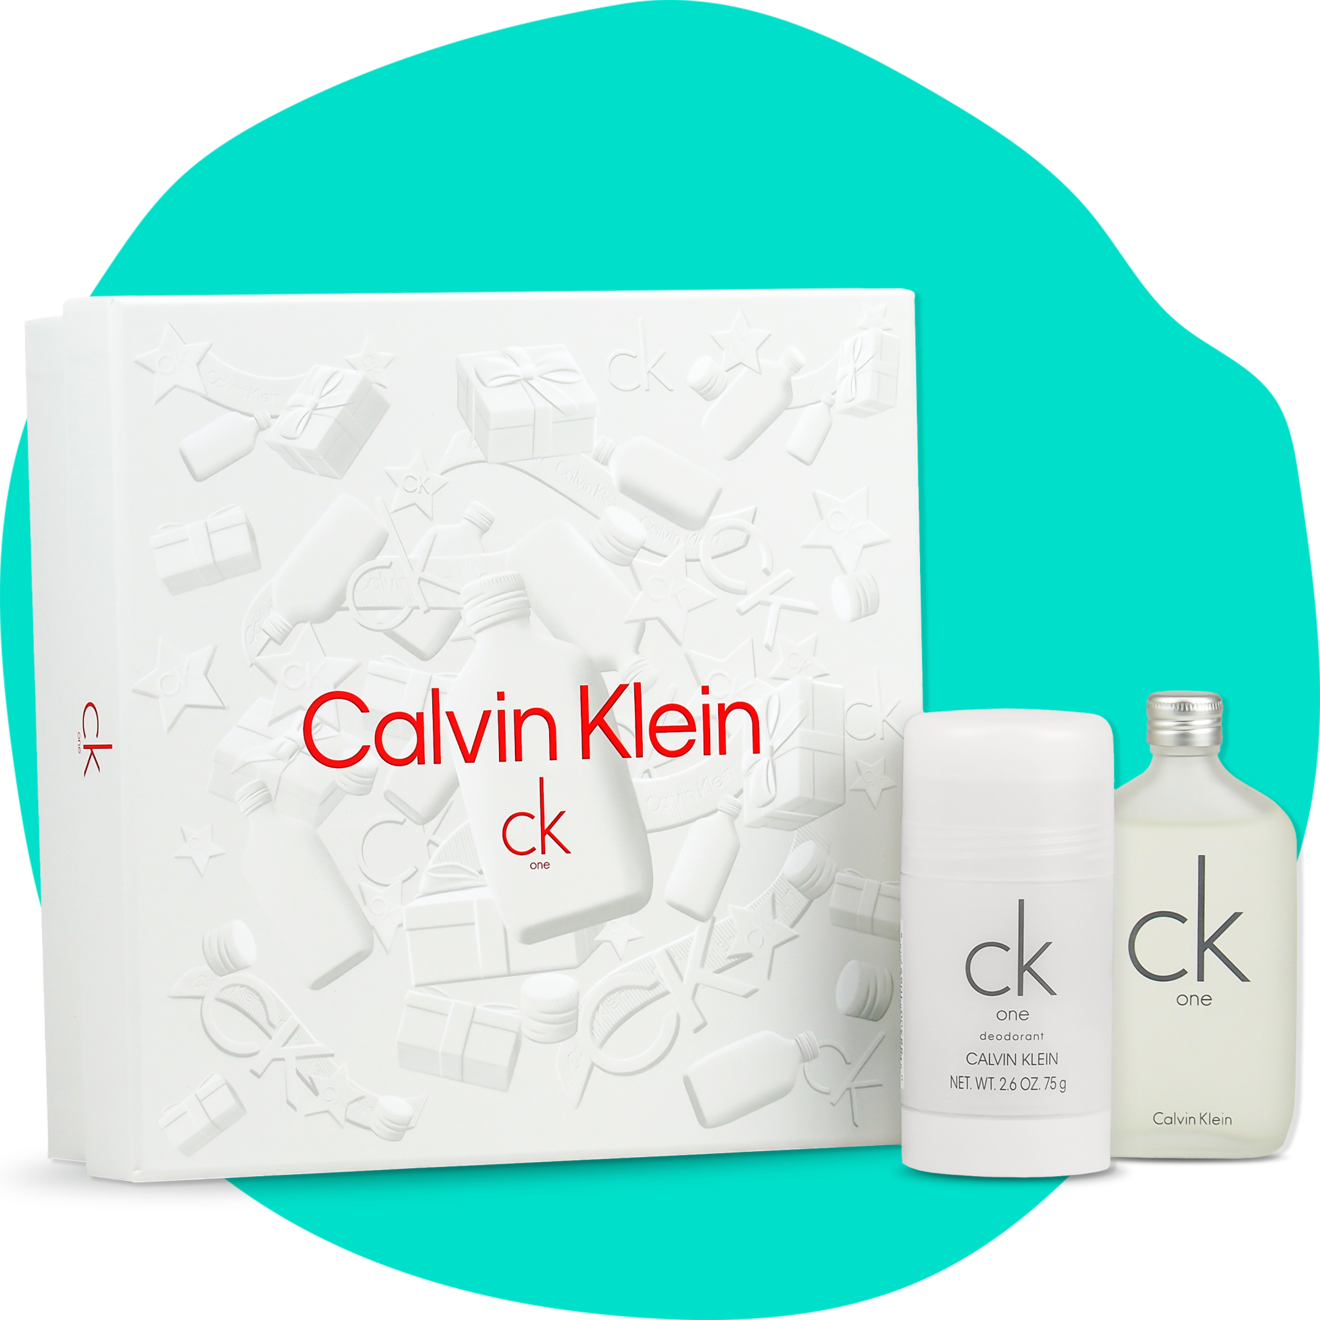 Calvin Klein CK One gaveæske på tilbud til 248 kr. hos Normal